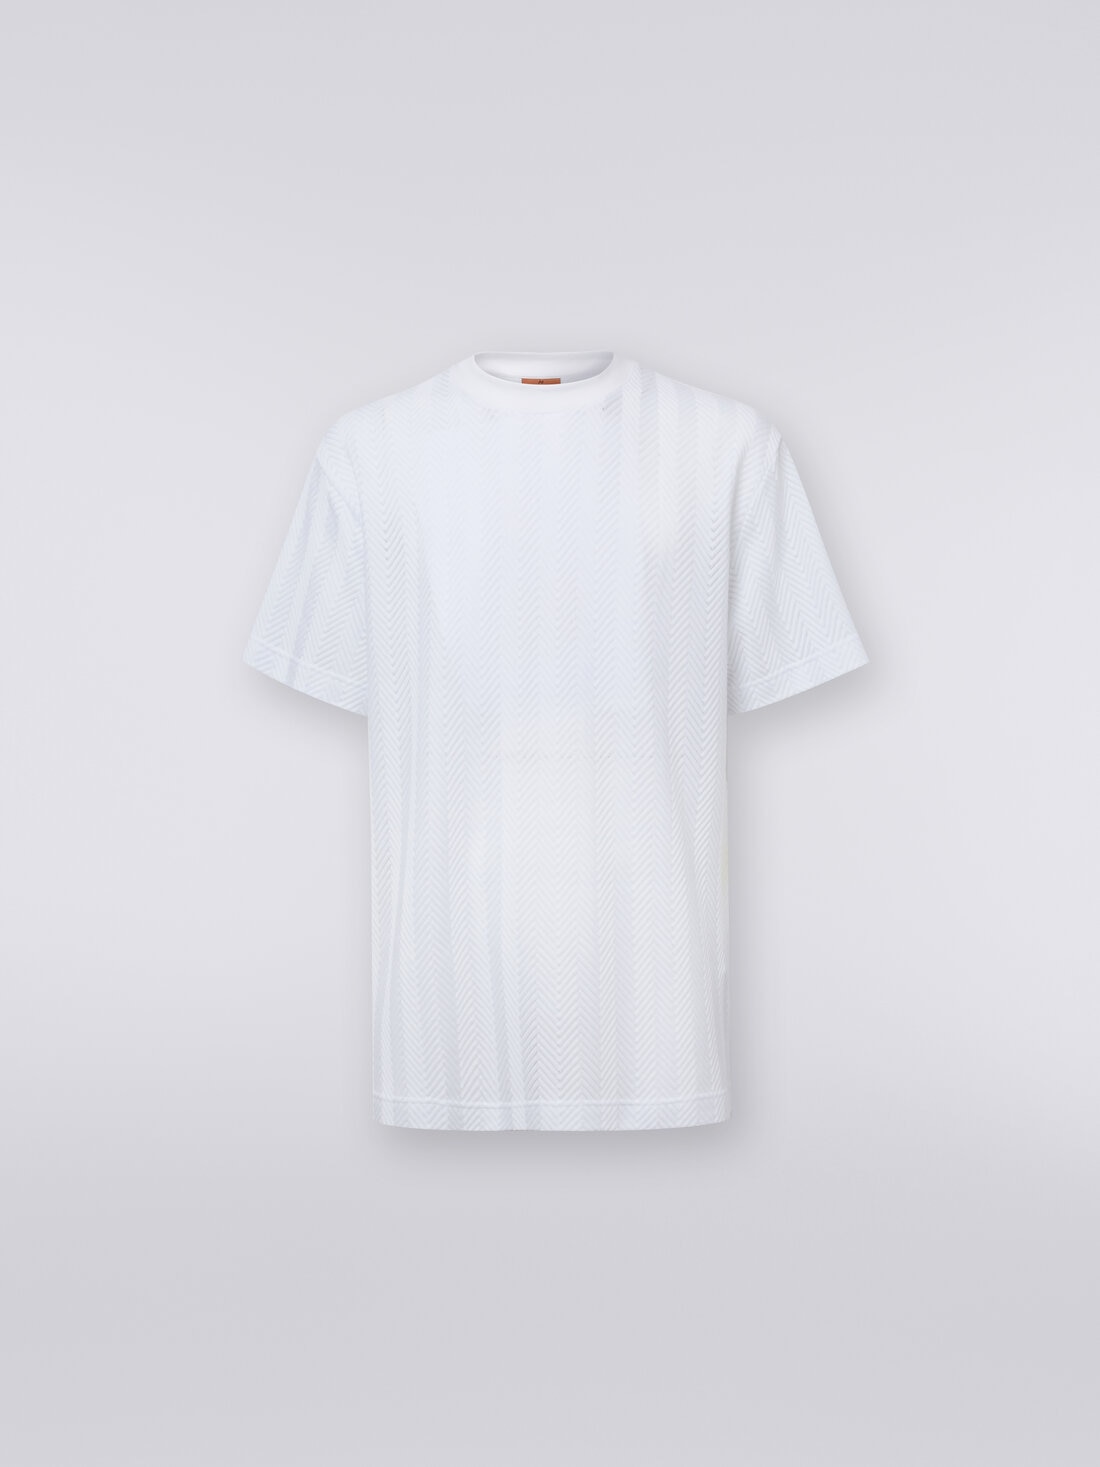 T-shirt girocollo in cotone e viscosa chevron, Bianco  - UC24SL00BR00JC10601 - 0